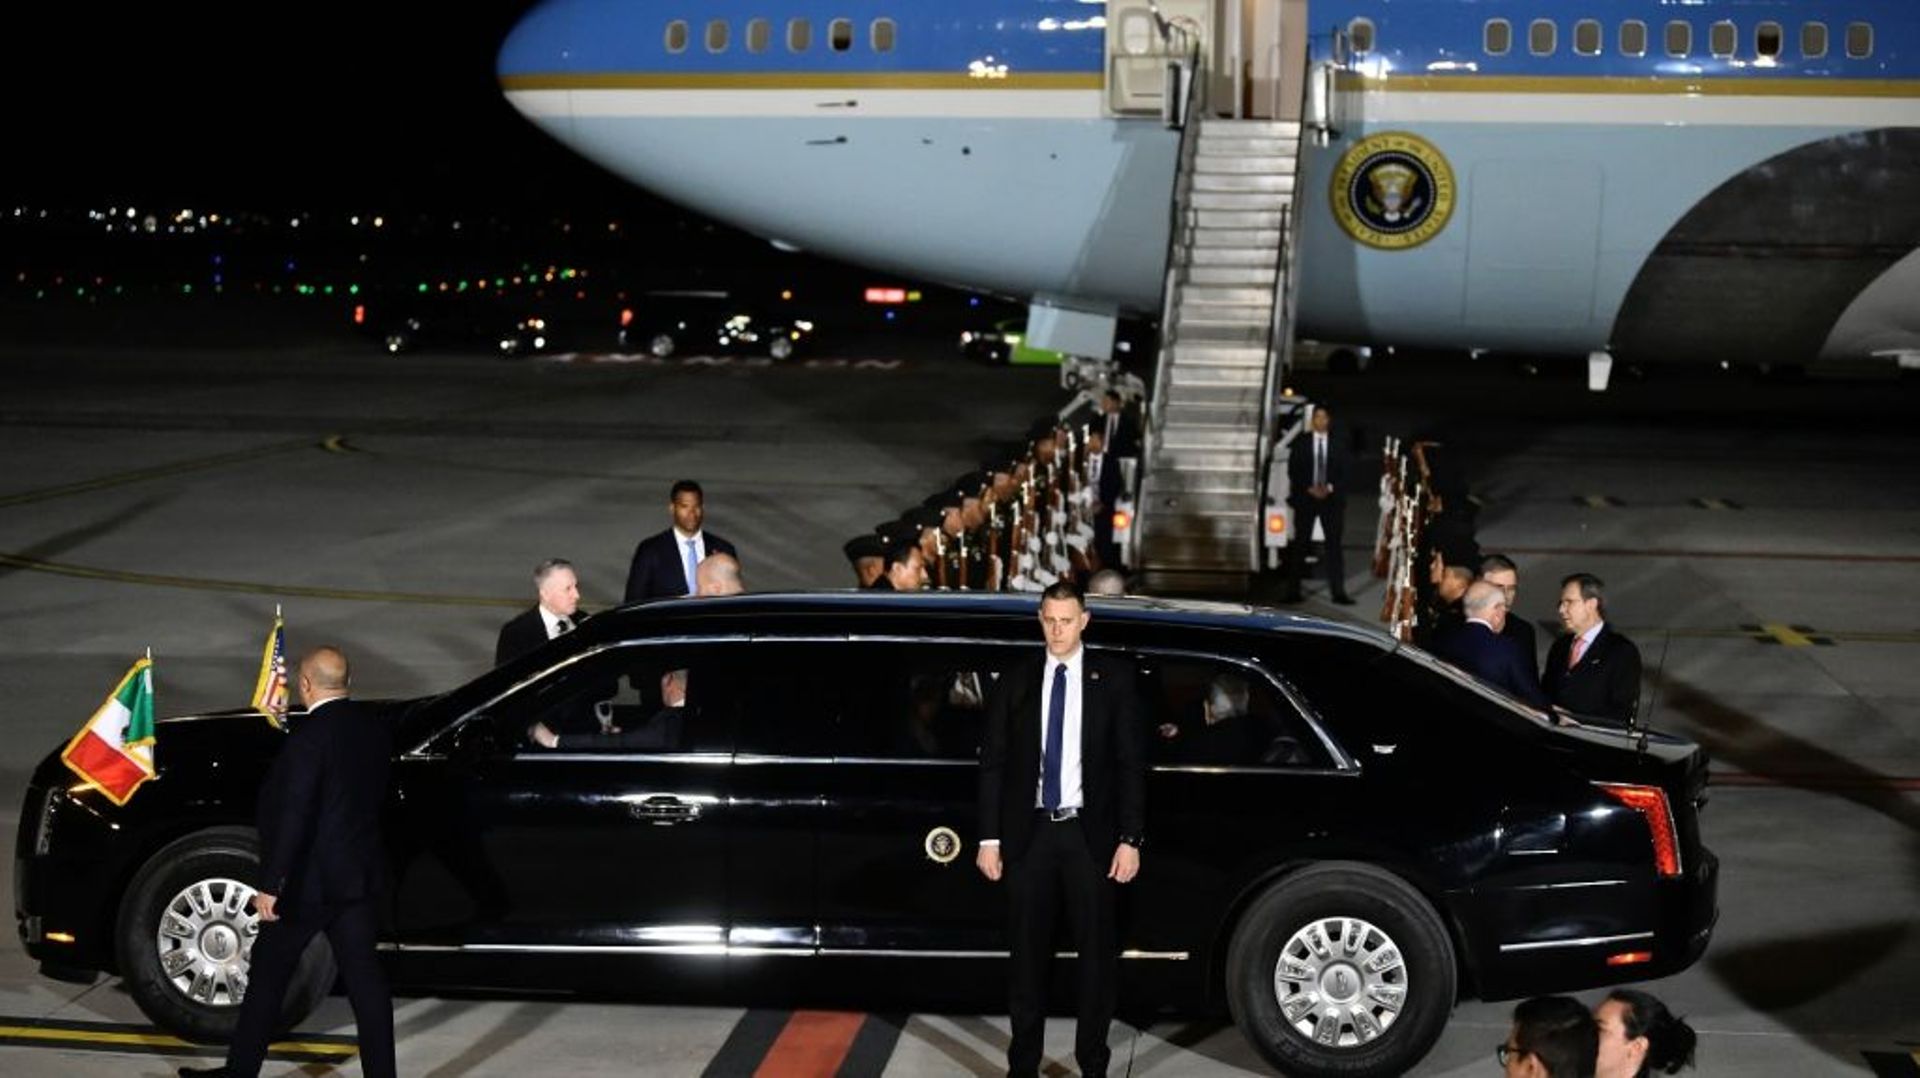 Les présidents américains et mexicains à bord de la limousine présidentielle américaine, surnommée "The Beast" (La Bête), à l'aéroport de Mexico, le 8 janvier 2023